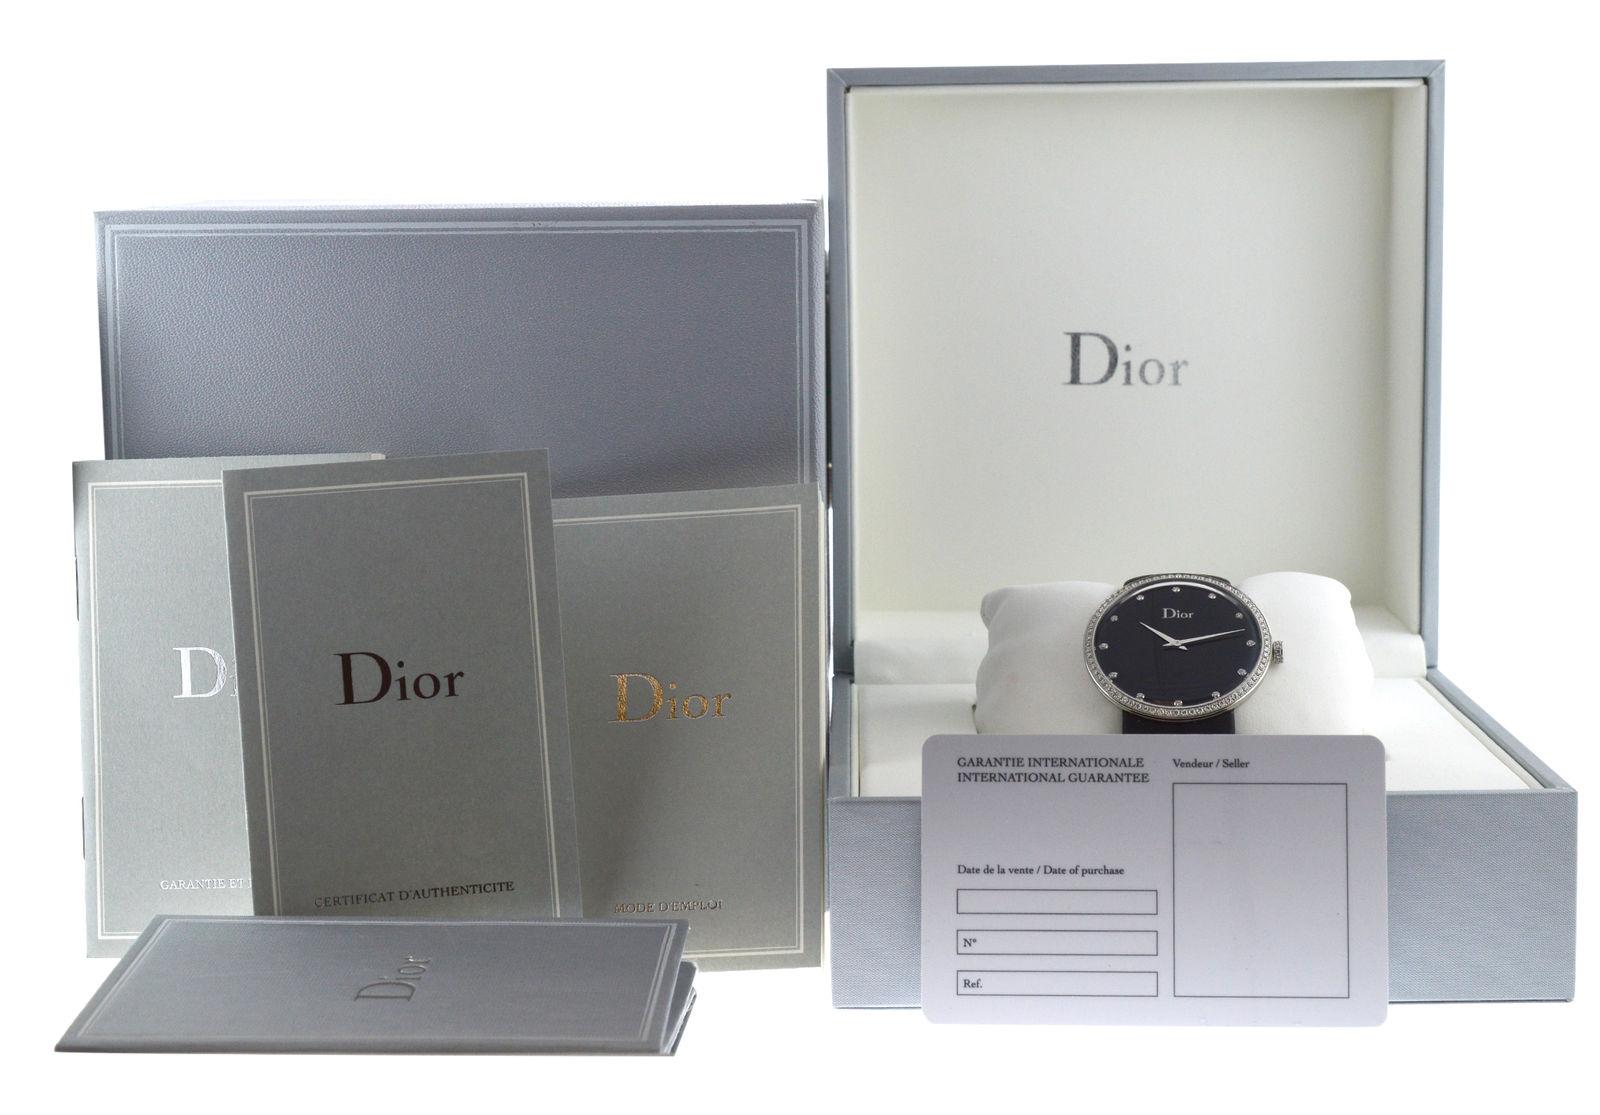 New Lady Christian Dior La D De Dior Diamond SS Quartz Watch For Sale 3